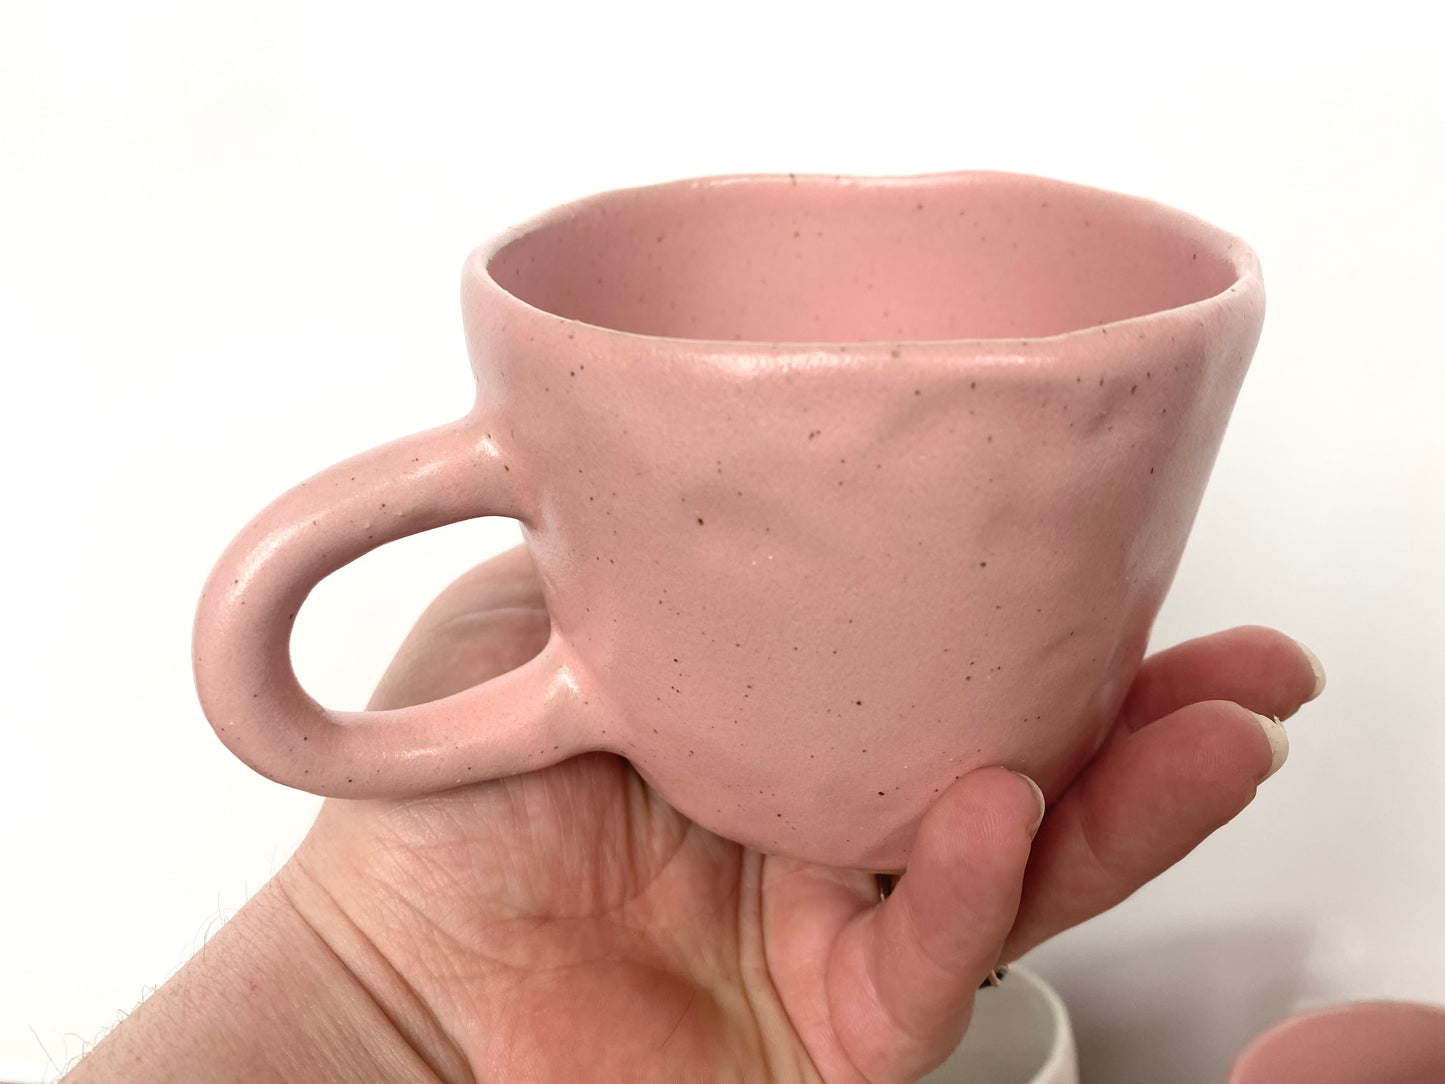 Tulip Mug - Pink